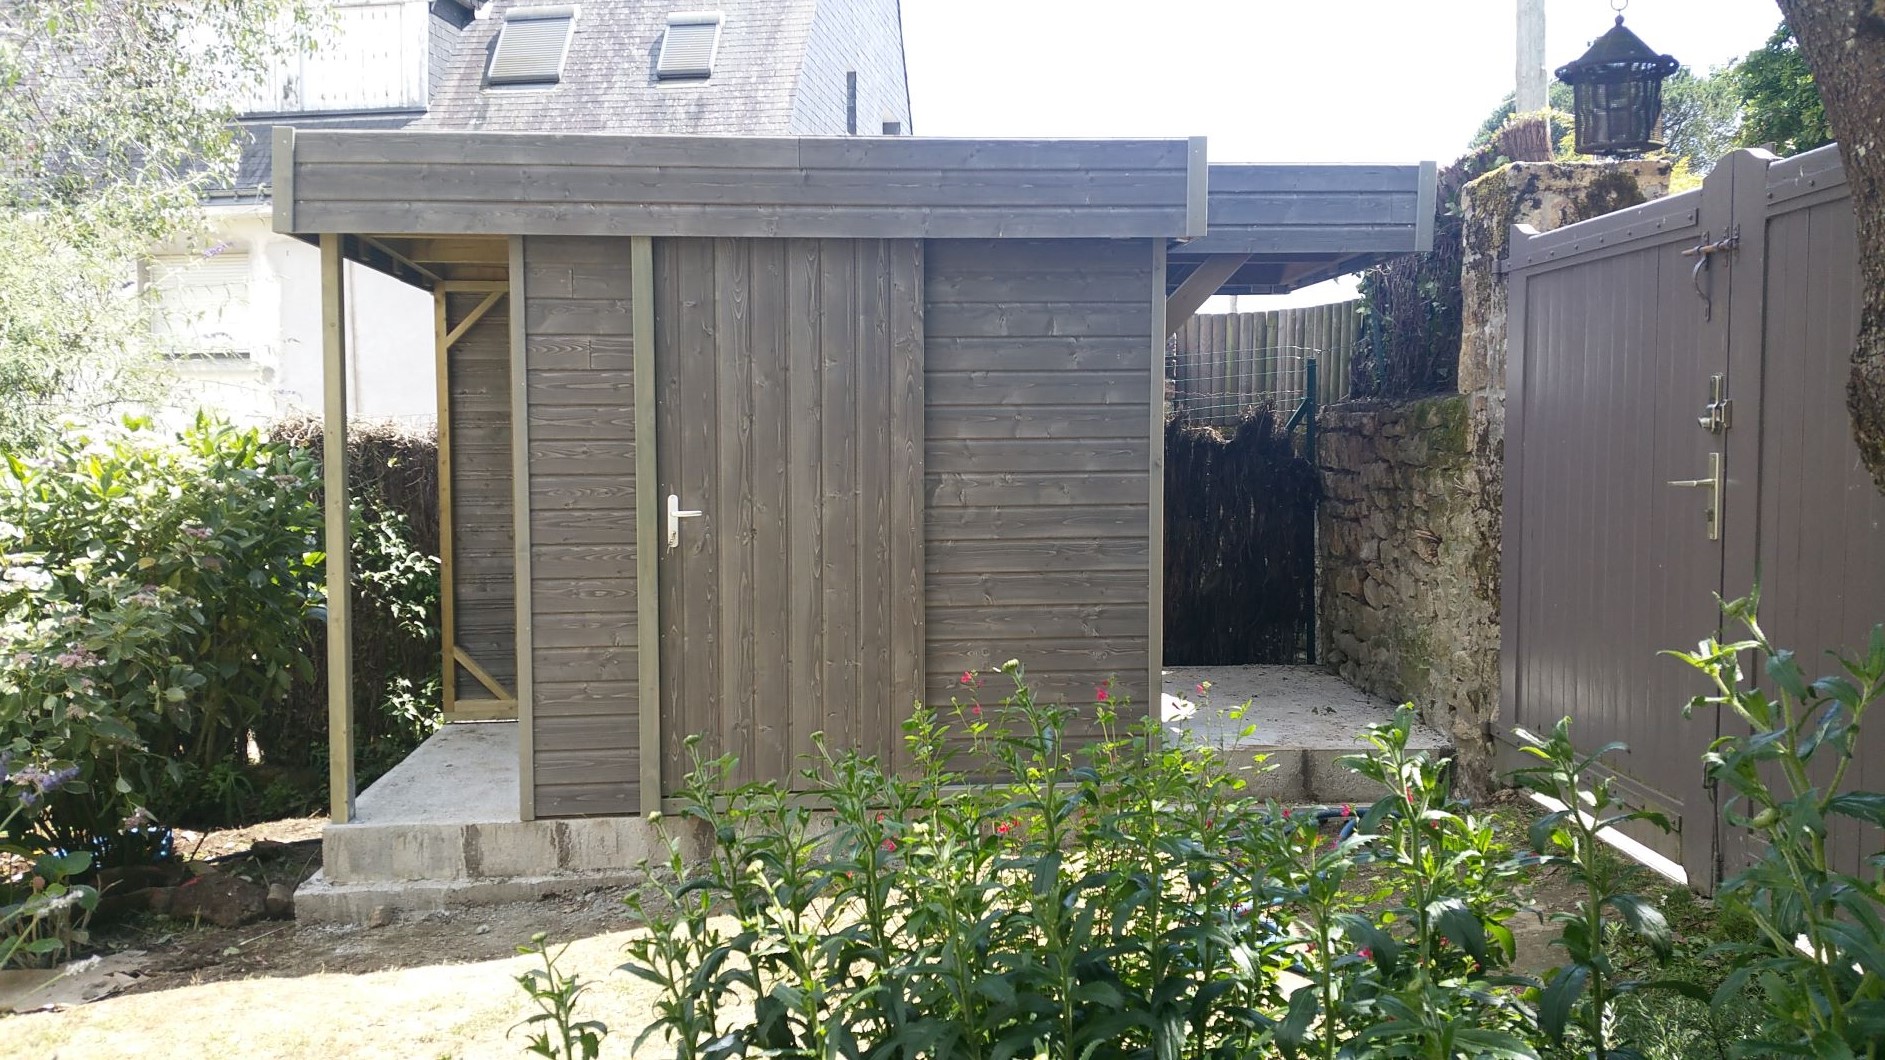 Atelier de Jardin monopente en bois La Baule, abri bois aménageable